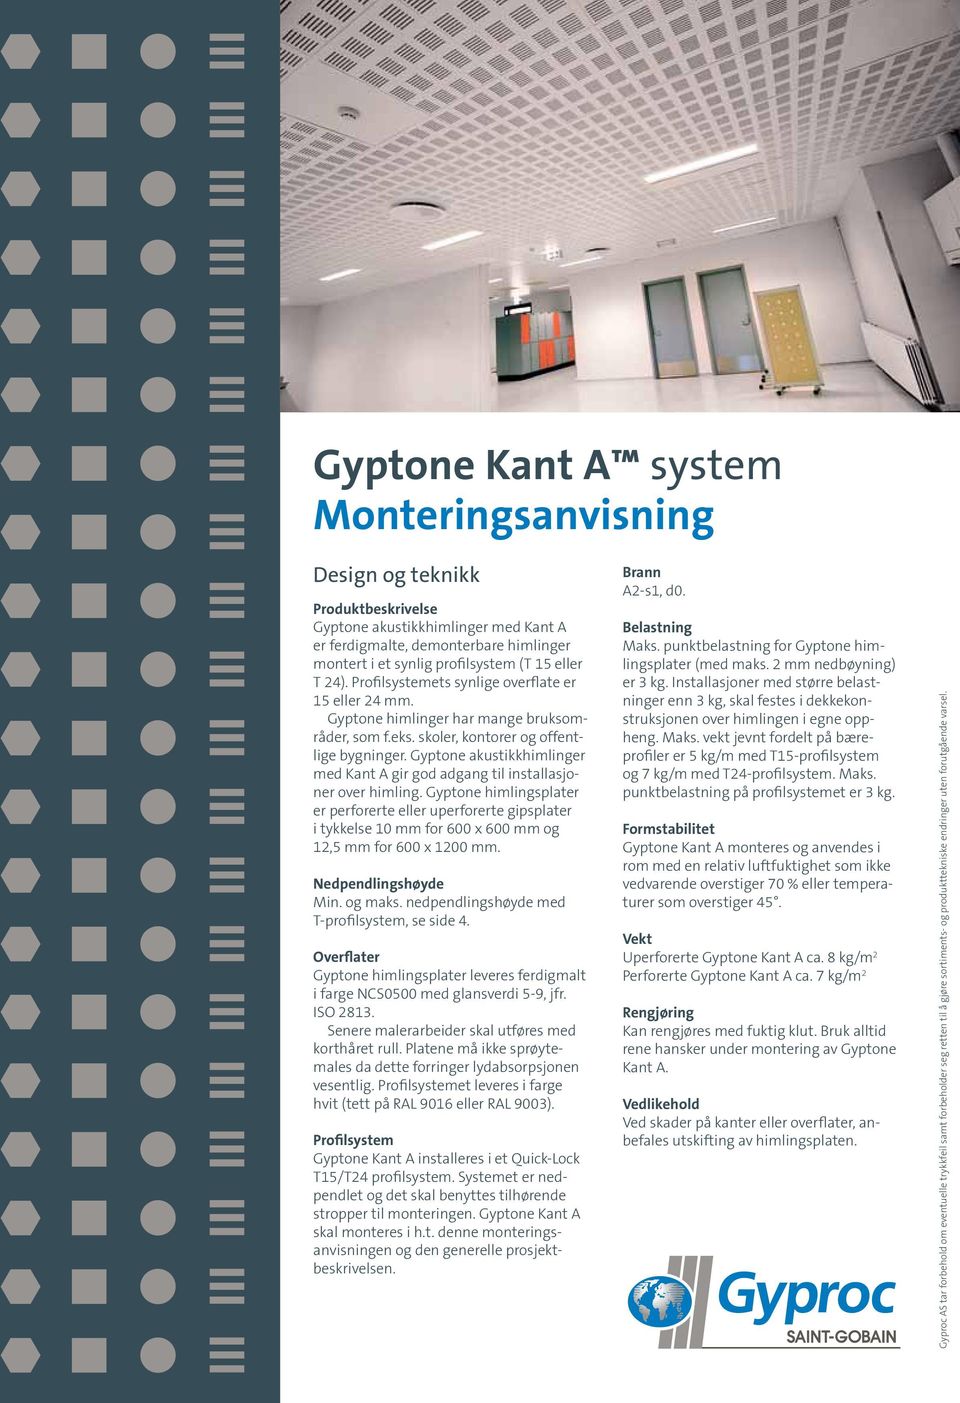 Gyptone akustikkhimlinger med Kant A gir god adgang til installasjoner over himling.